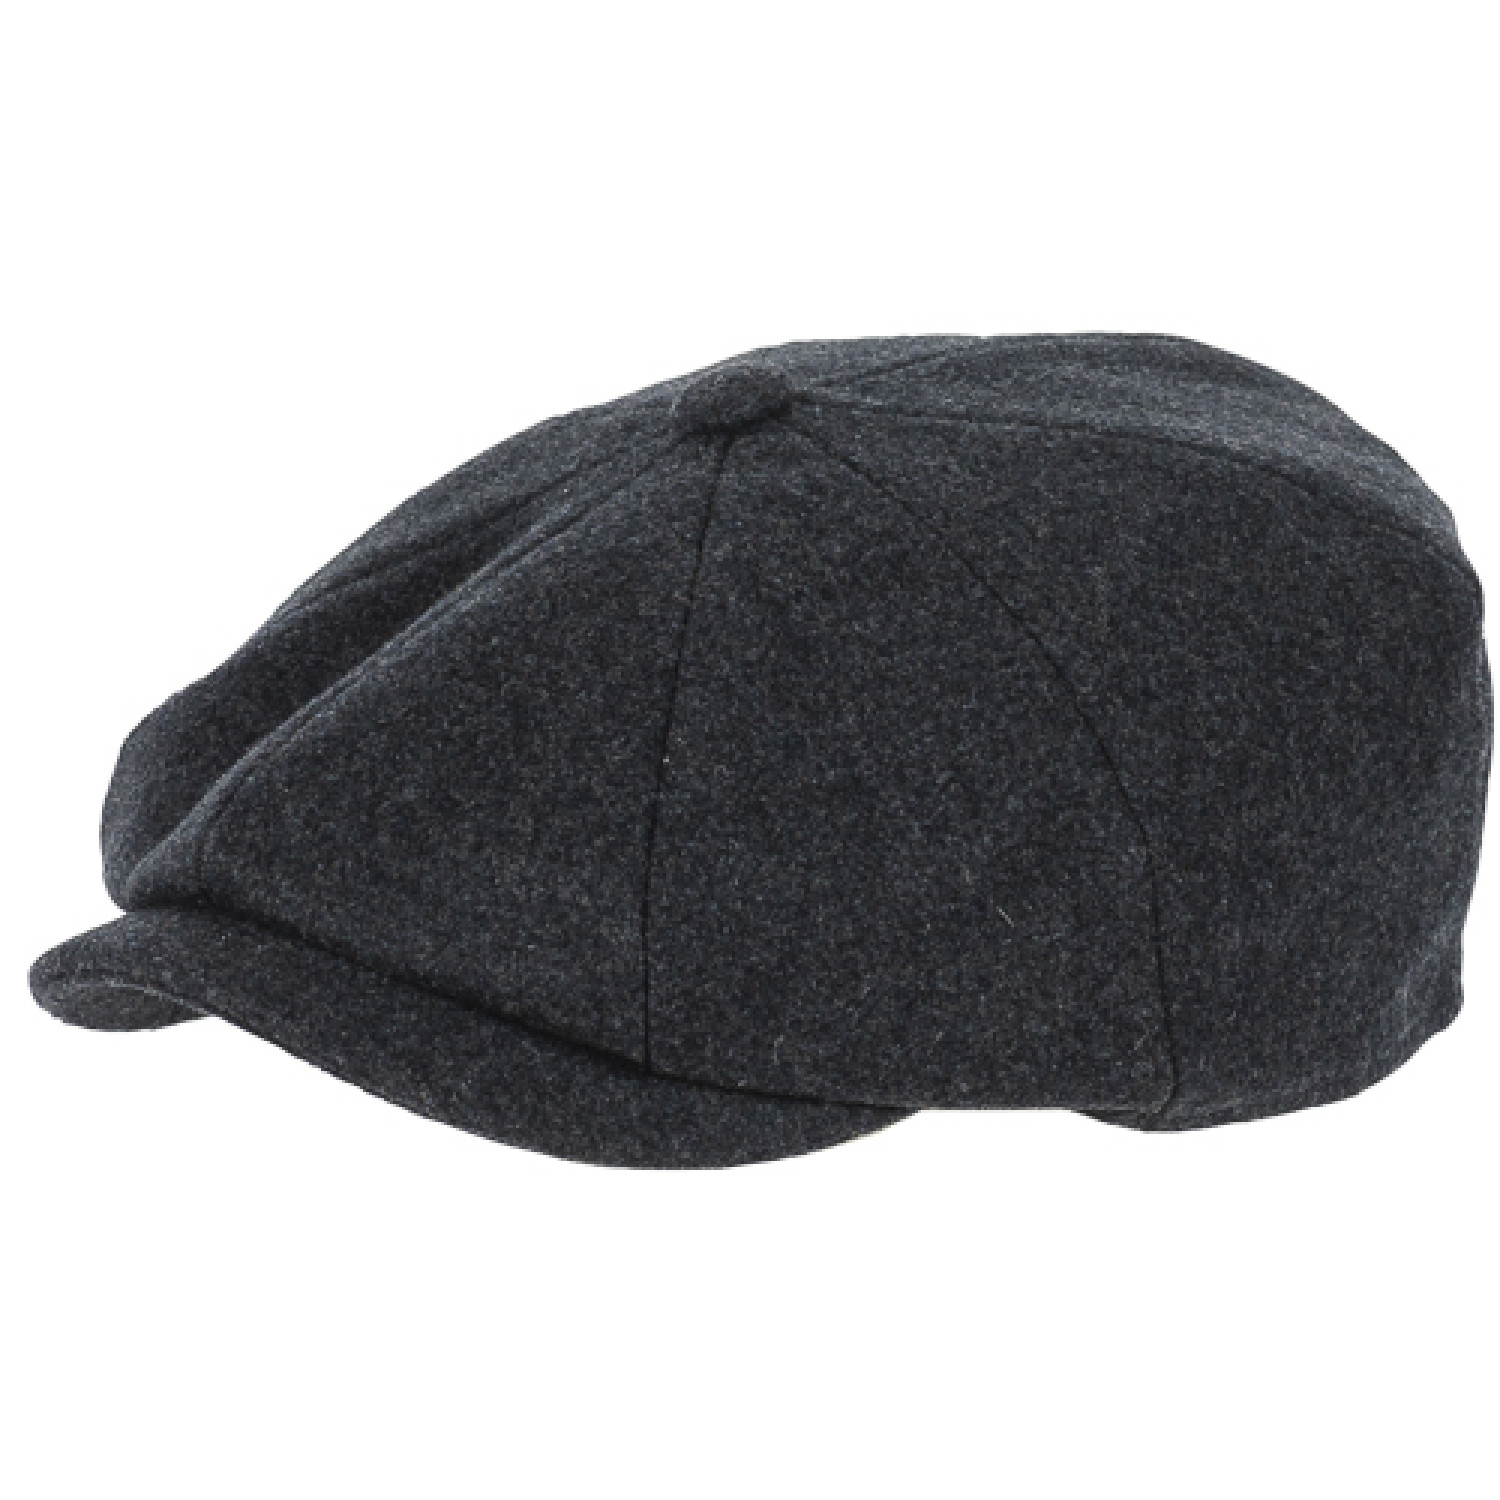 Flat cap Newsboy Wool blend